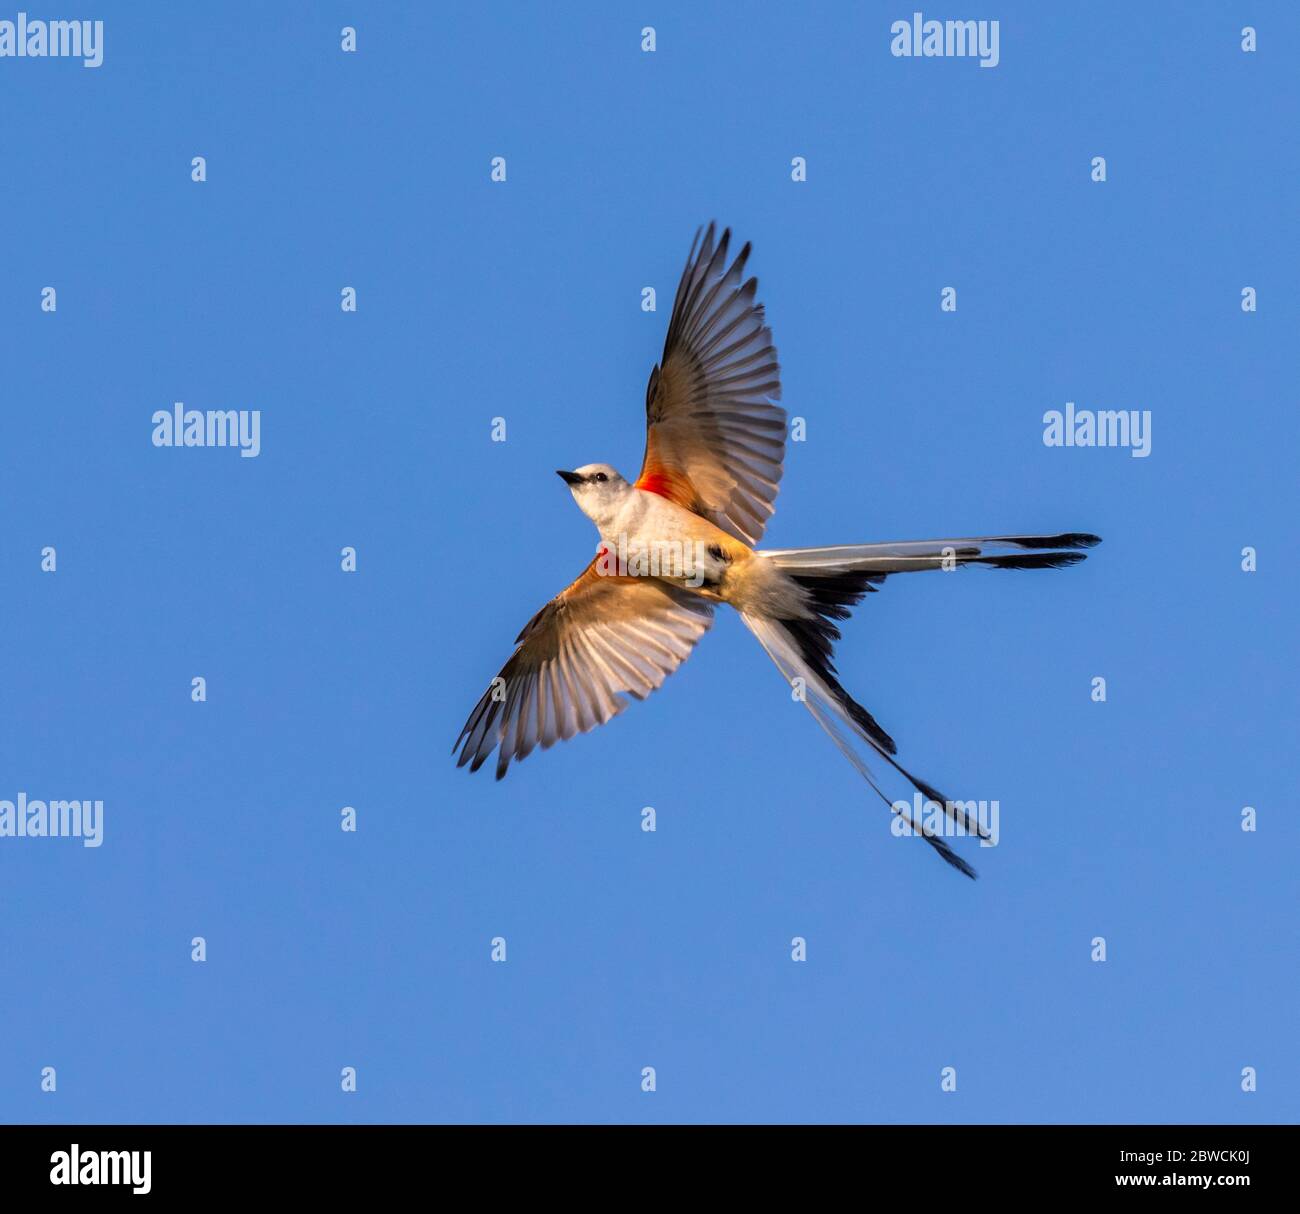 Il flycatcher con coda a forbice (Tyrannus forficatus) apre la coda facendo una svolta in aria, Galveston, Texas, USA. Foto Stock